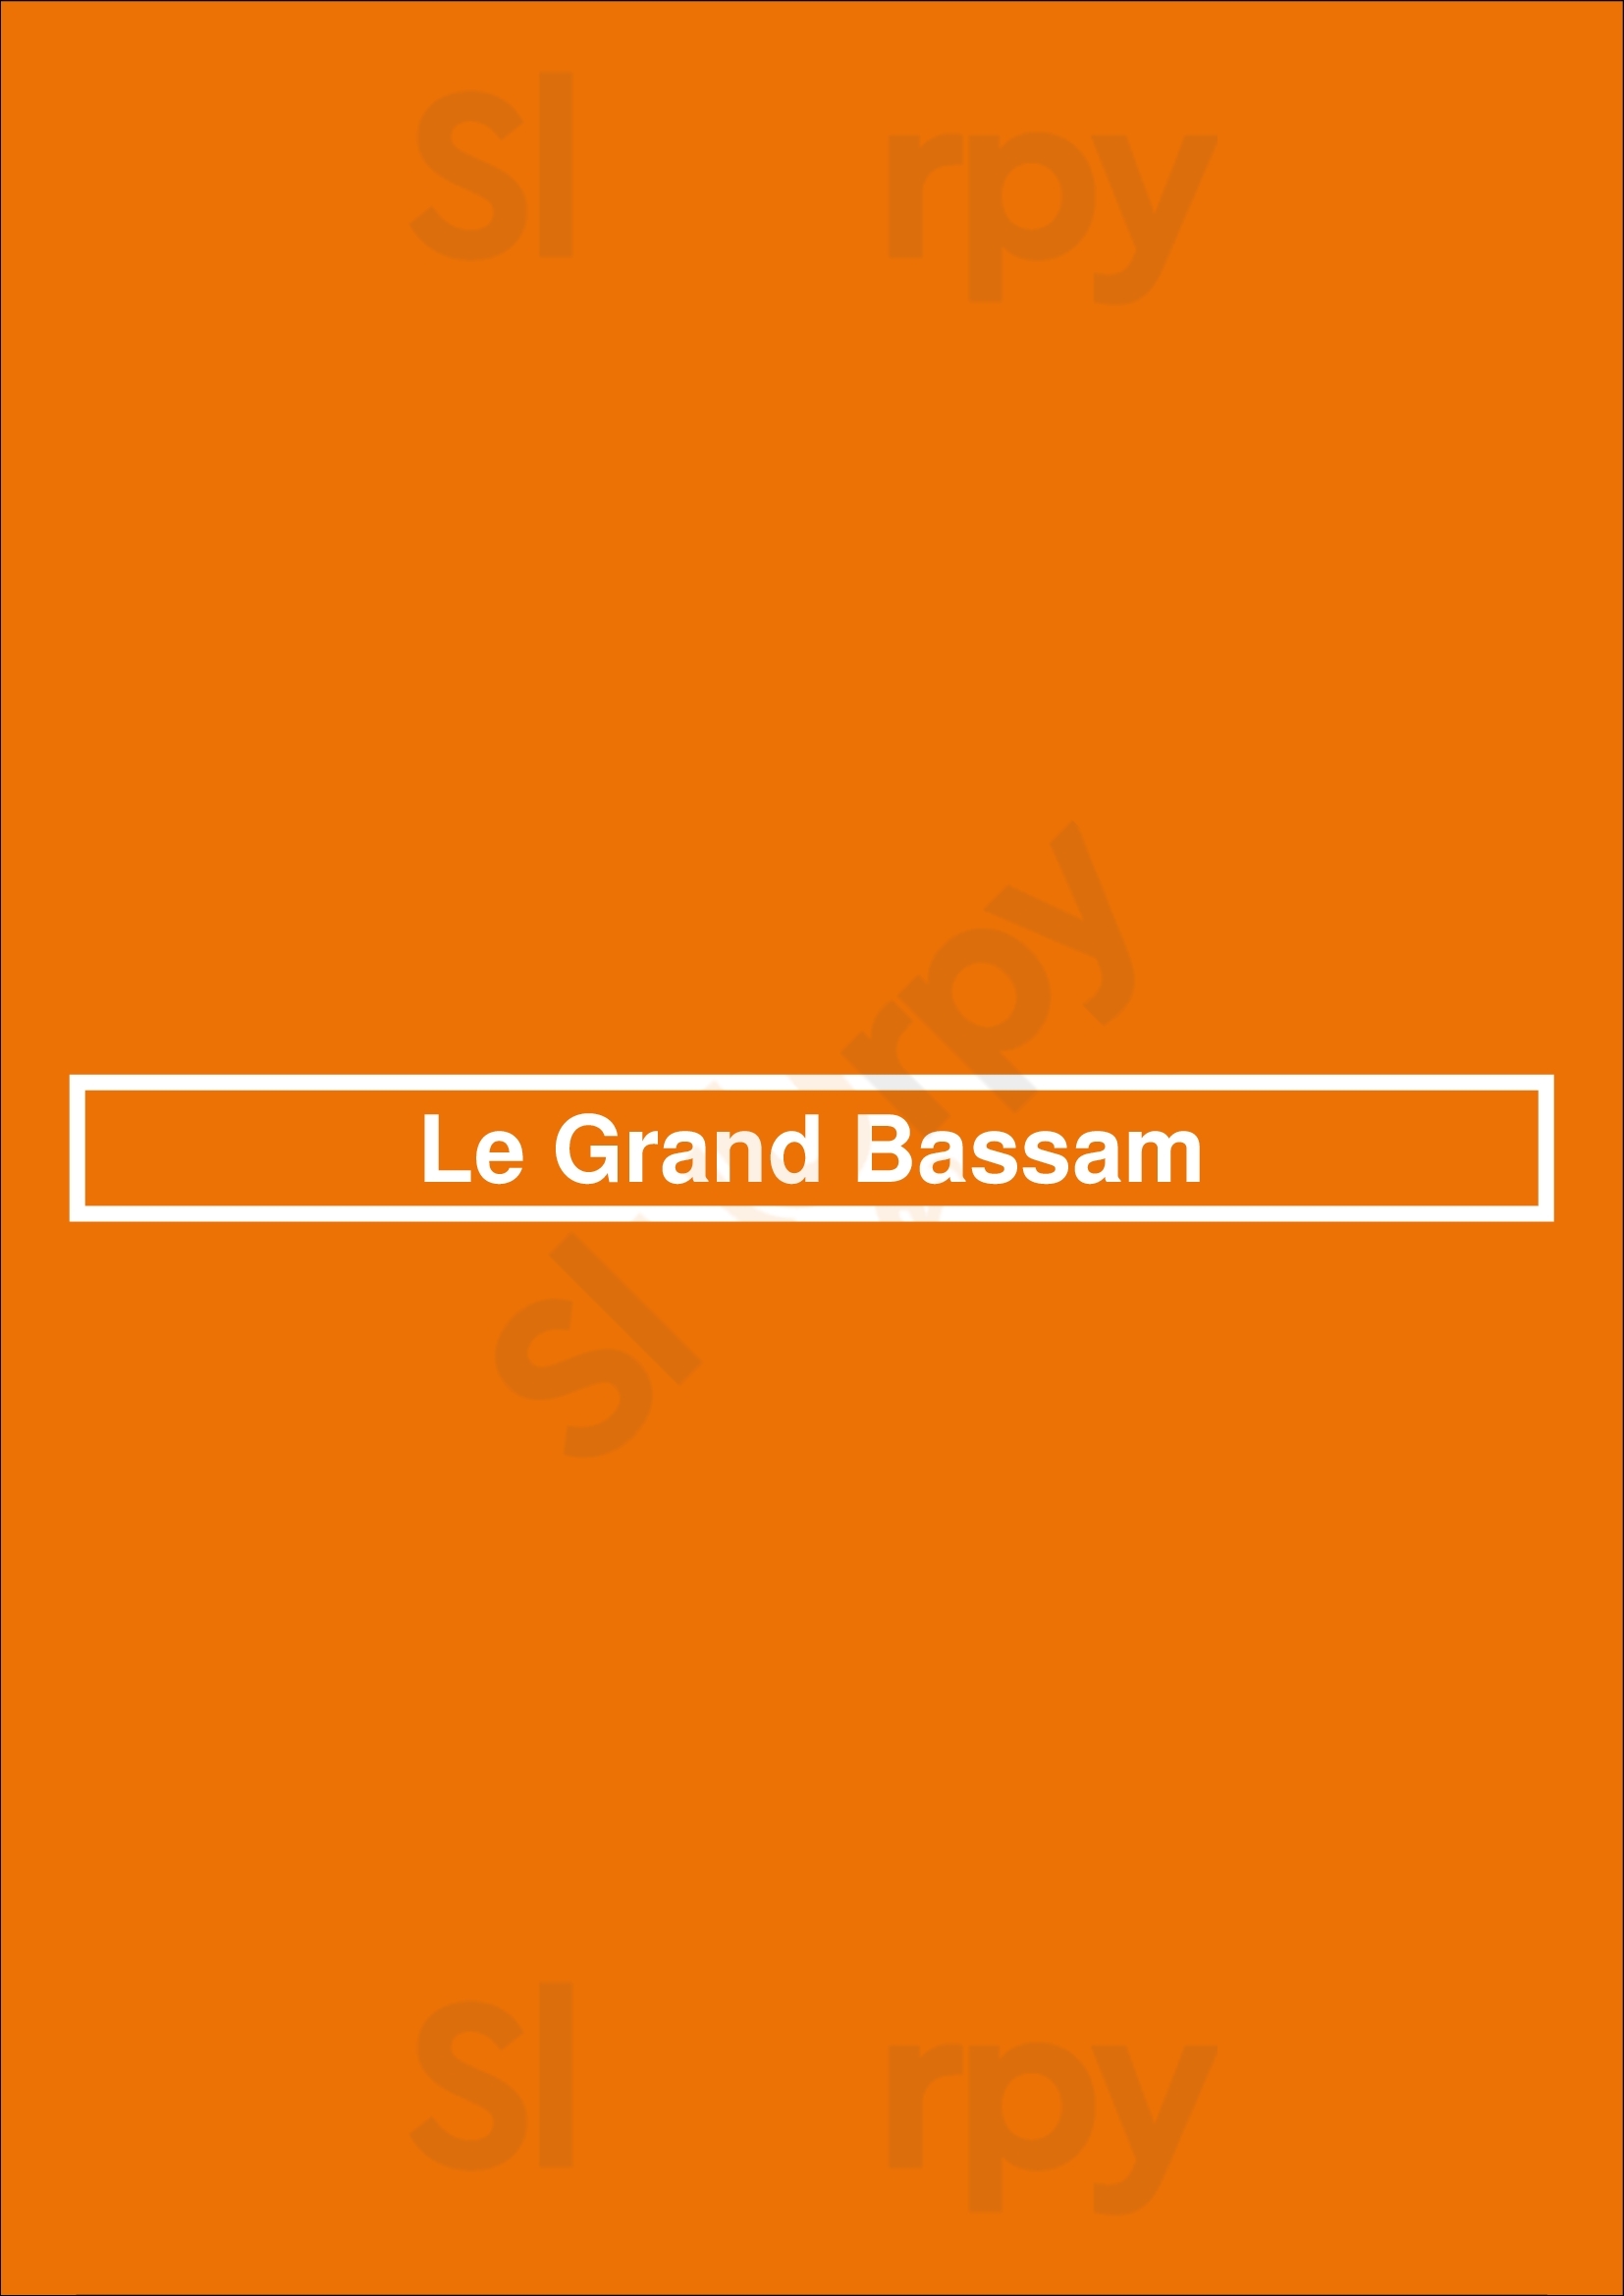 Le Grand Bassam Bruxelles Menu - 1